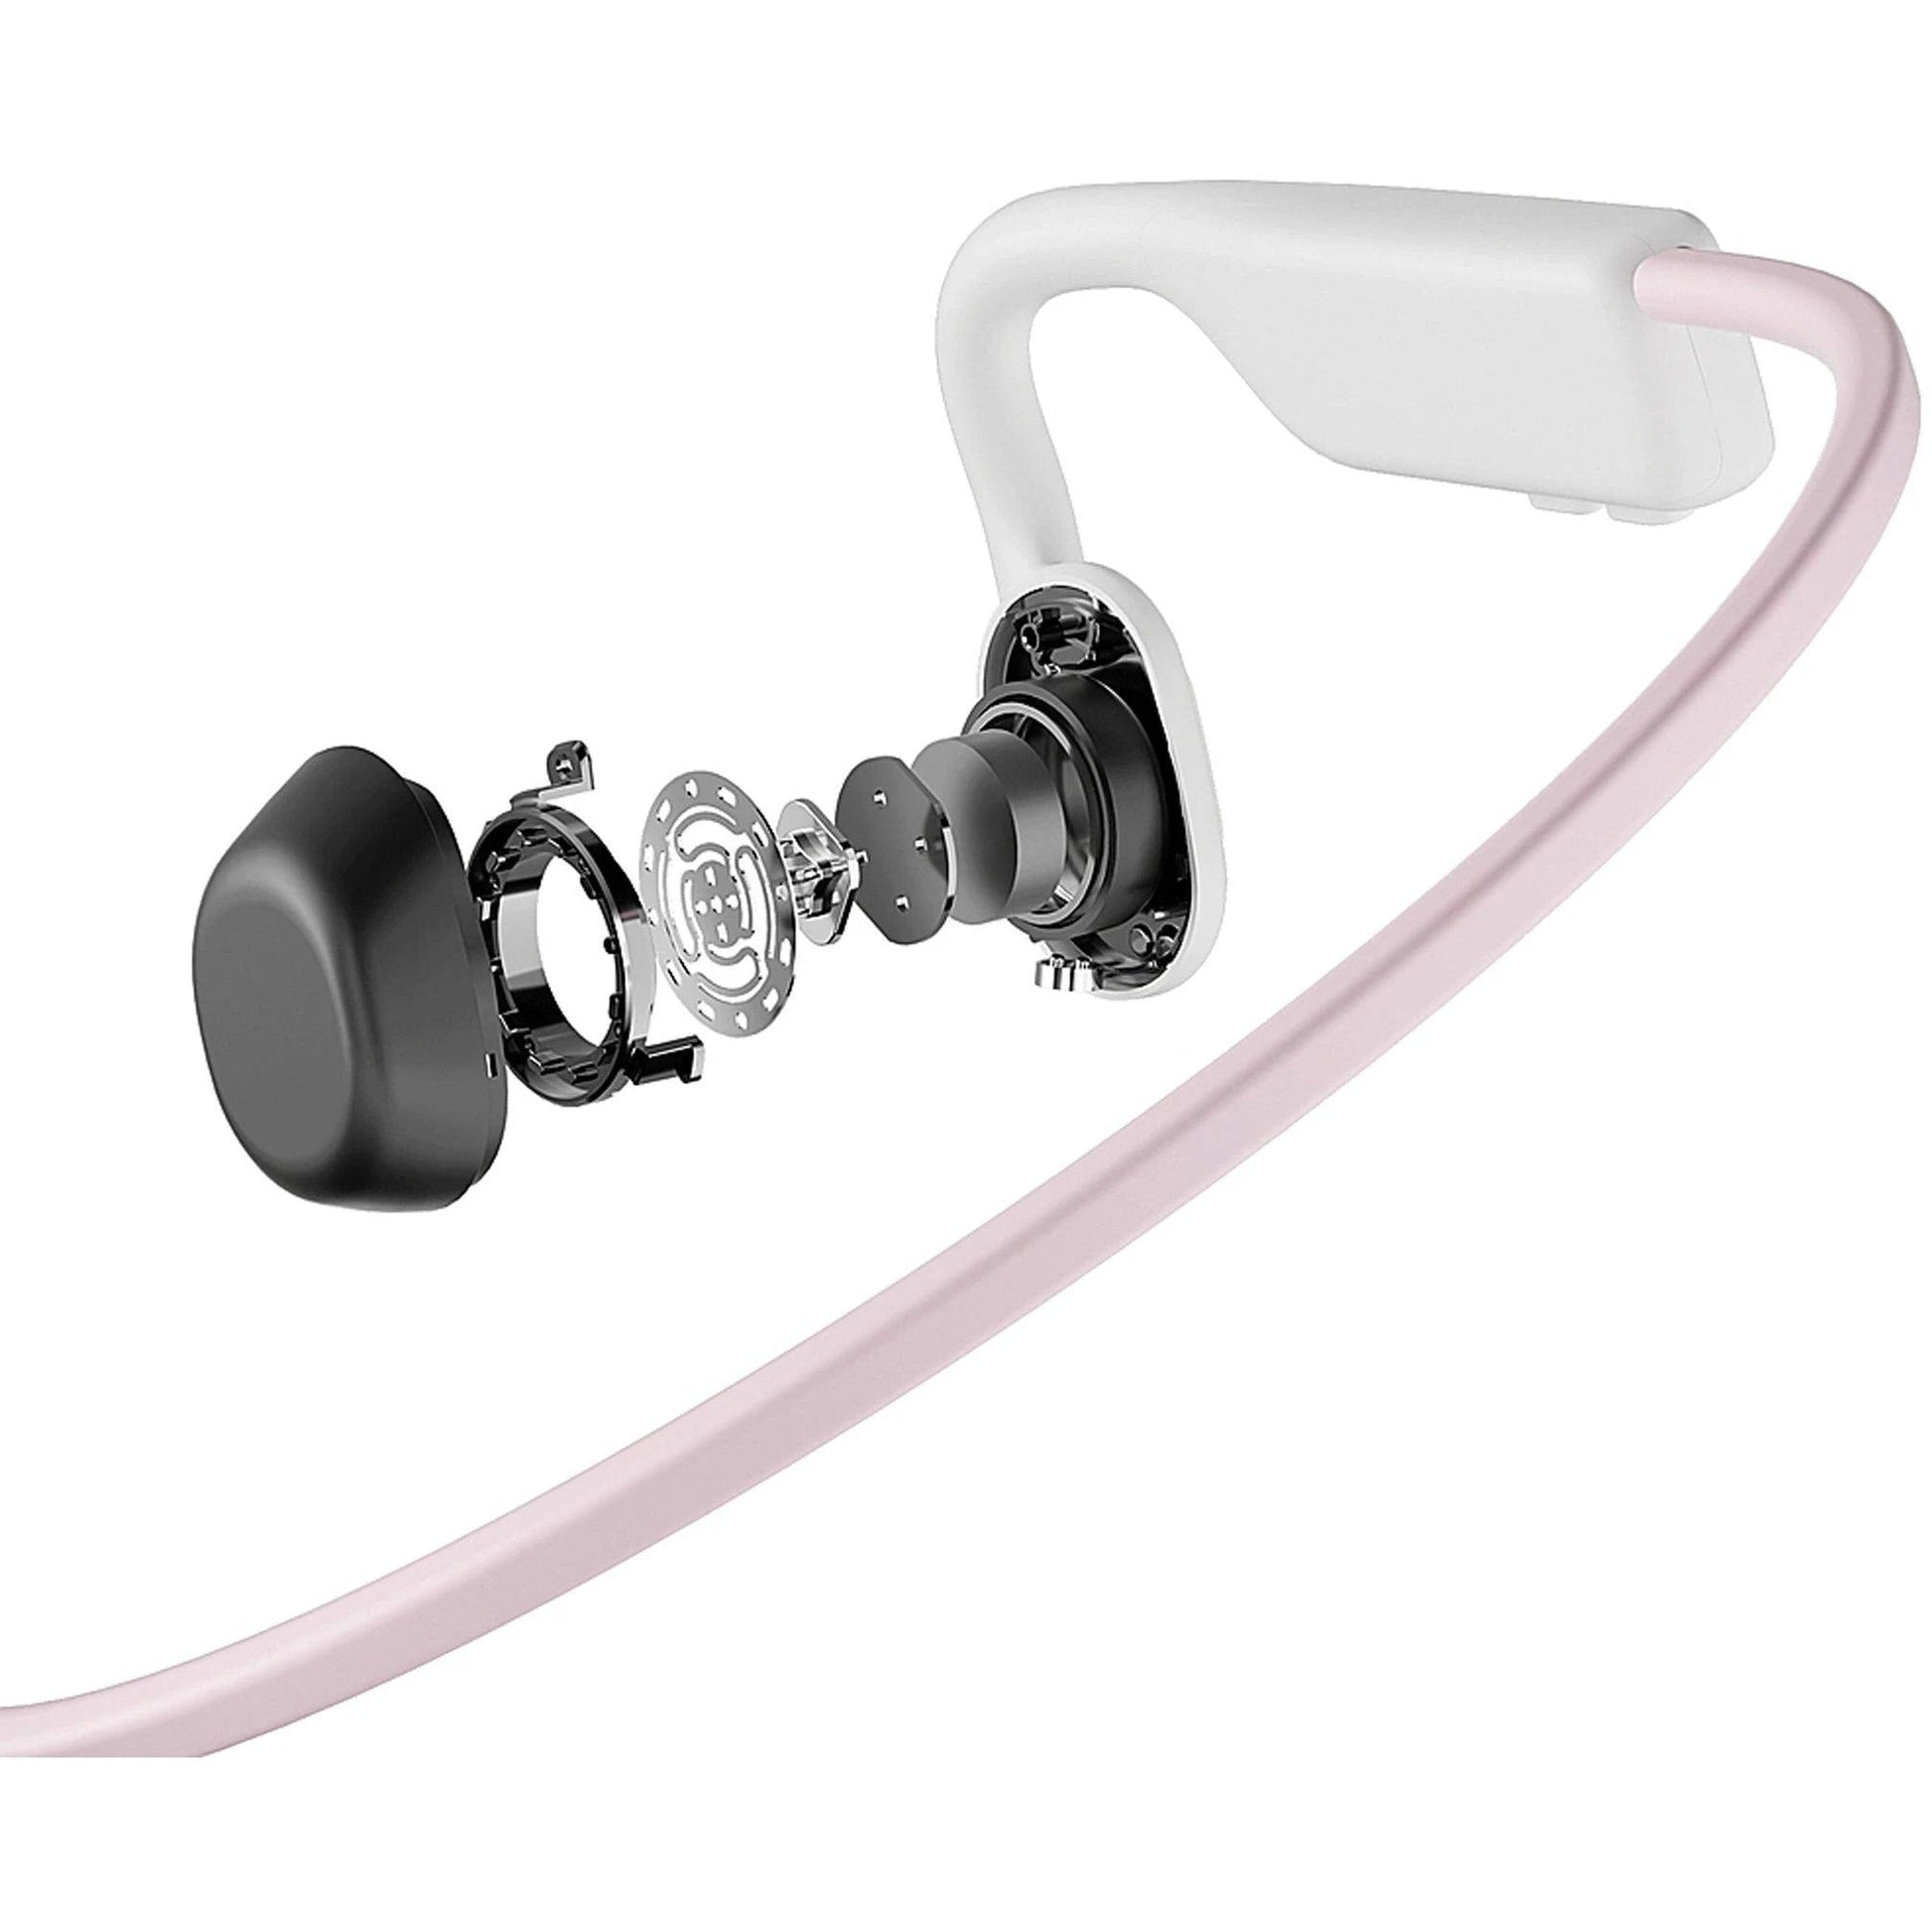 Shokz Openmove Wireless Headphones S661Pnk Details